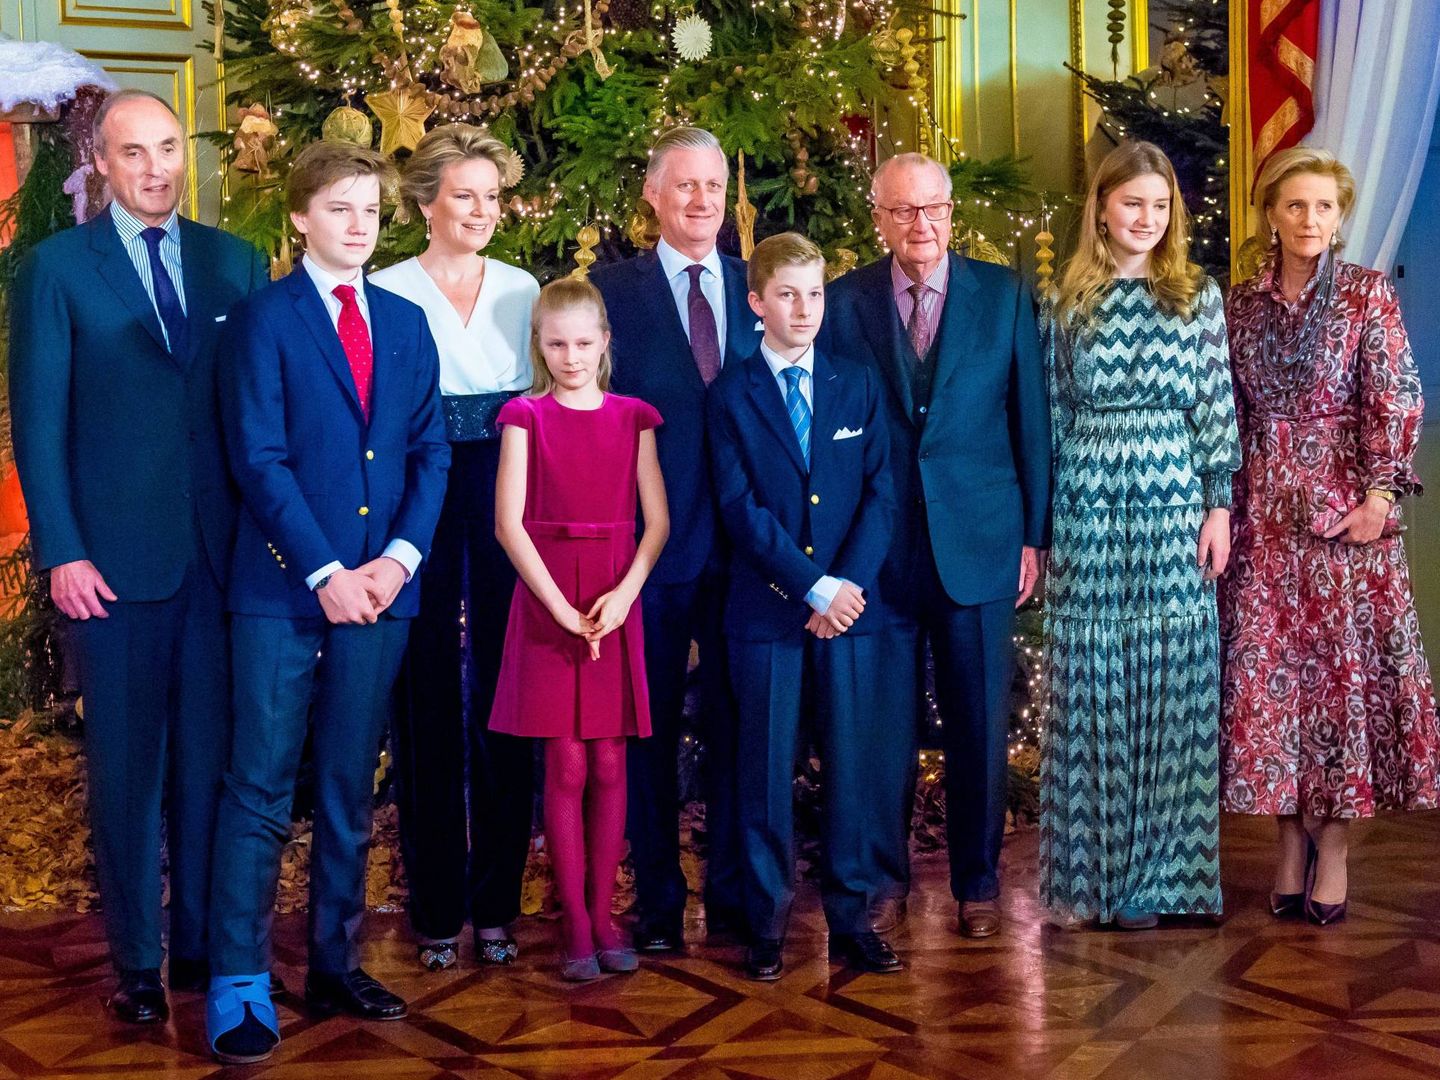 Tradicional imagen familiar navideña en el palacio de Bruselas. (Cordon Press)